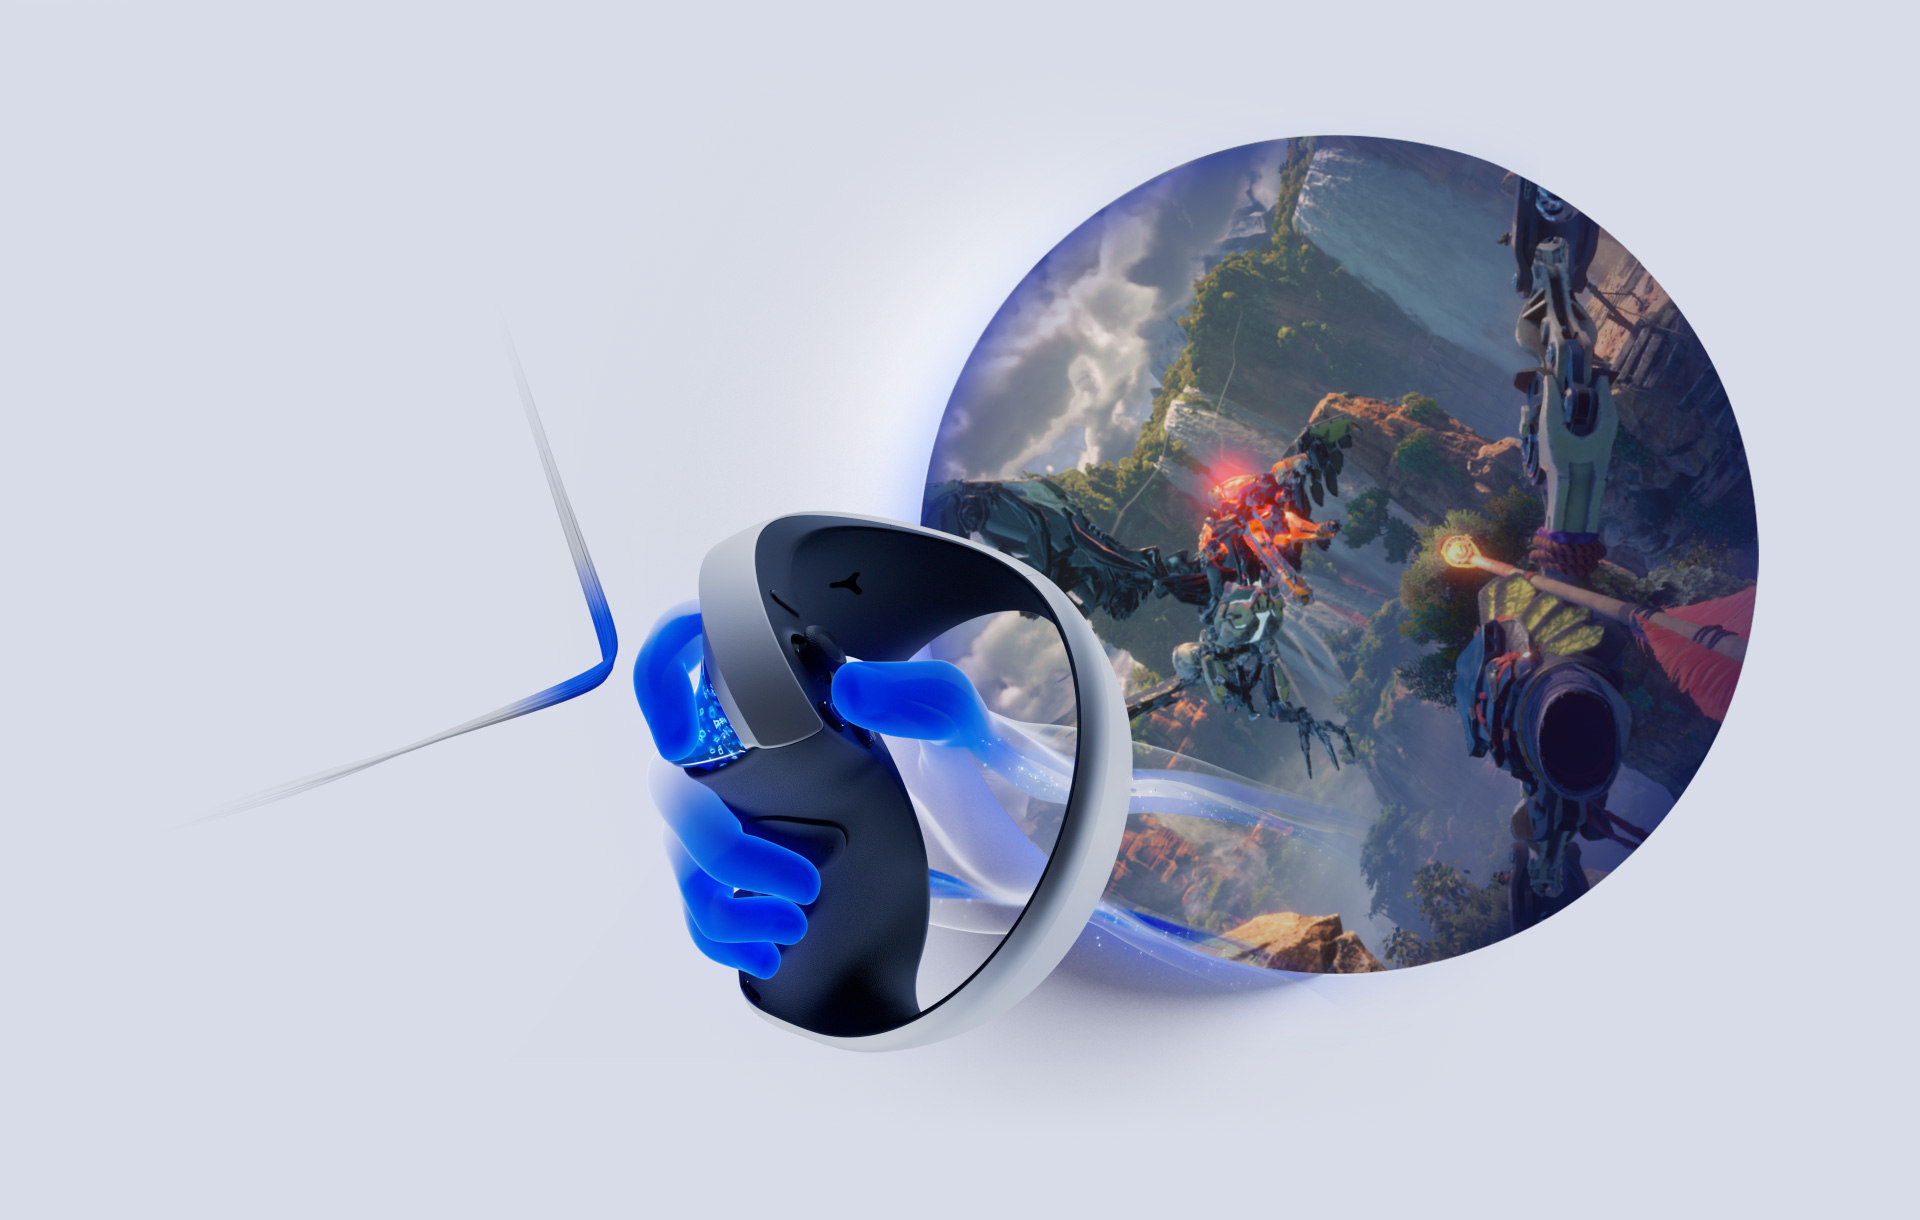 Sony lança novo PlayStation VR2 com dezenas de jogos de realidade virtual -  Tecnologia e Games - Folha PE